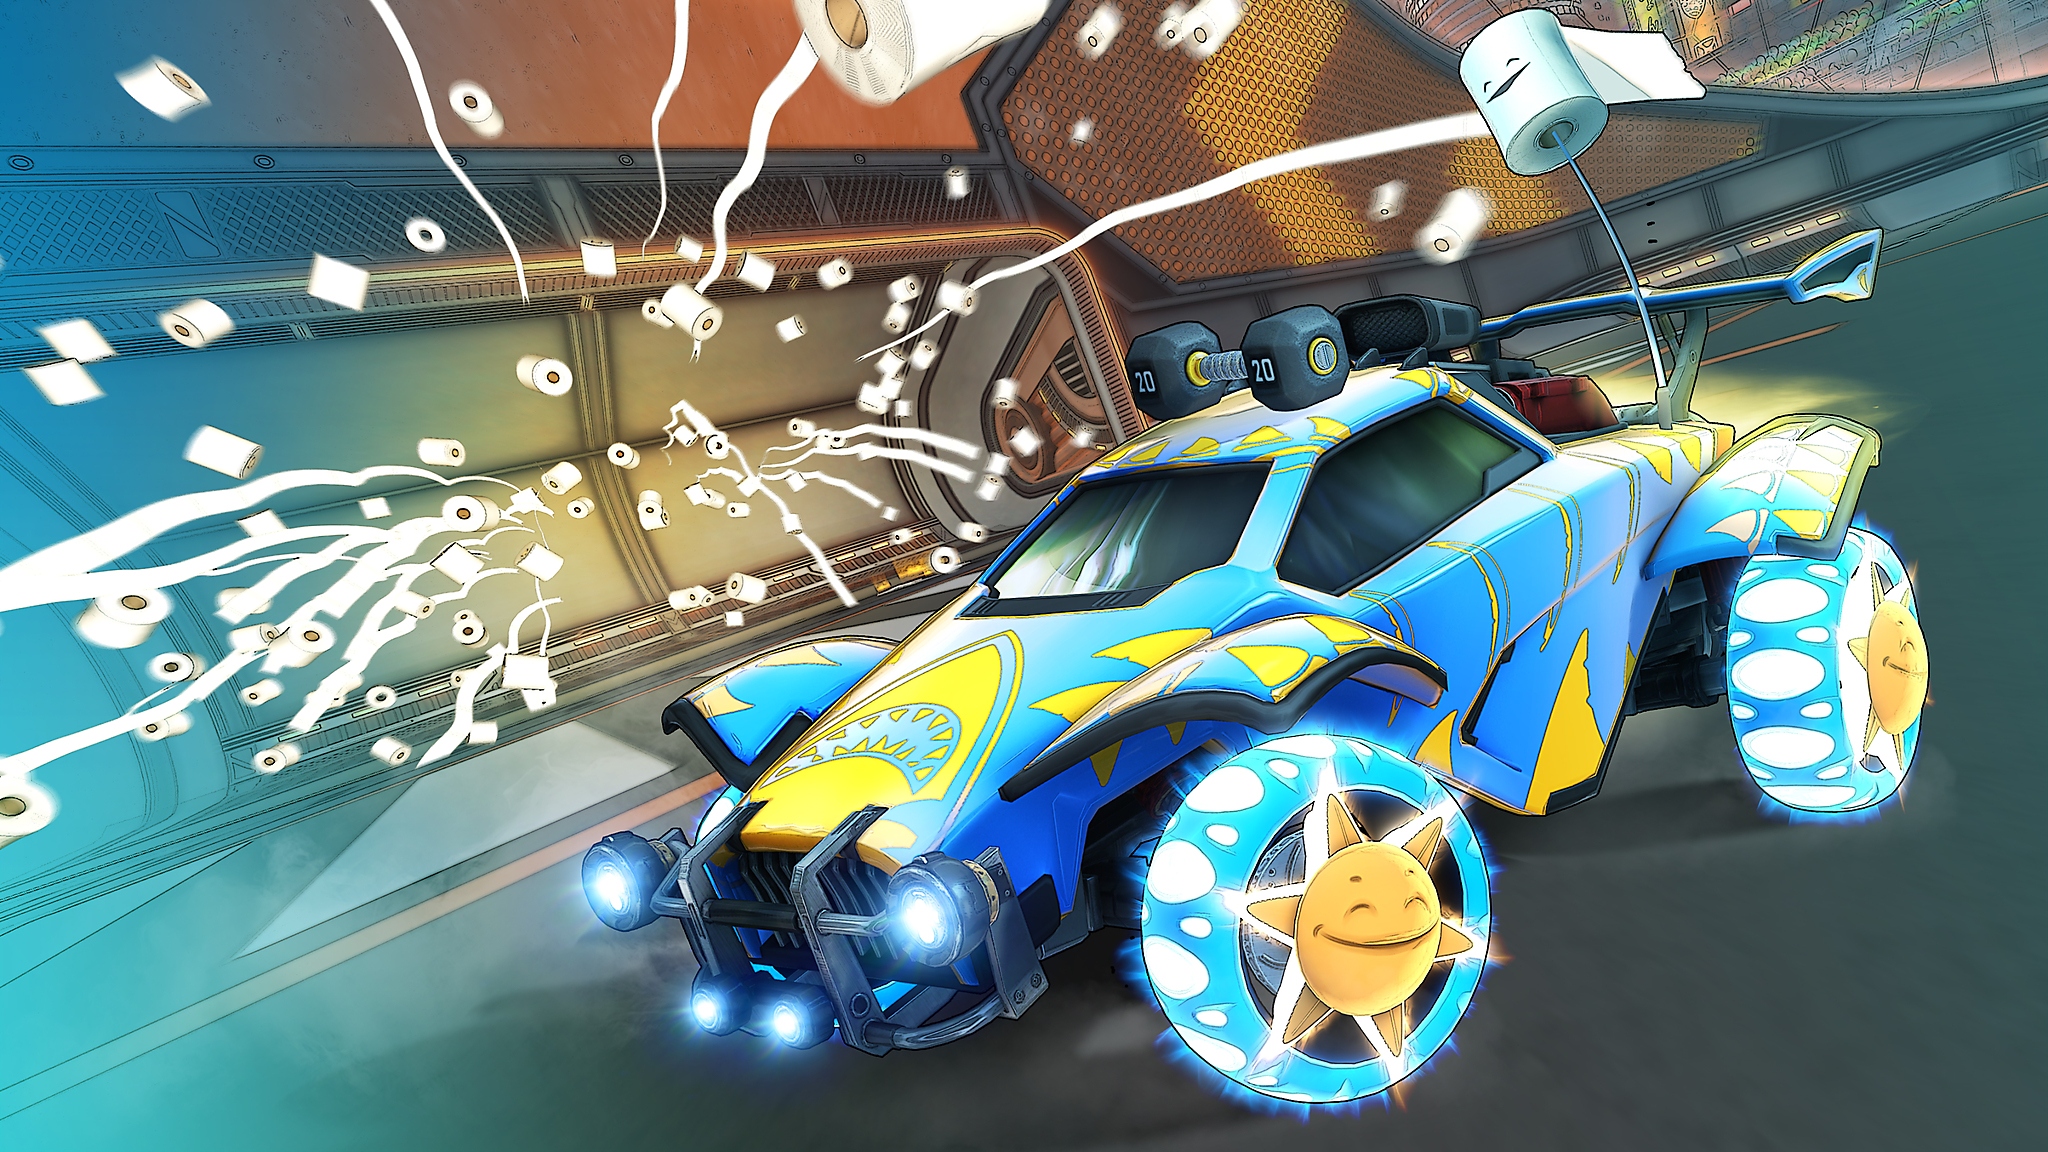 Rocket League – sezon 6 – zrzut ekranu przedstawiający niebiesko-żółty samochód wśród rolek papieru toaletowego wyrzuconych w powietrze